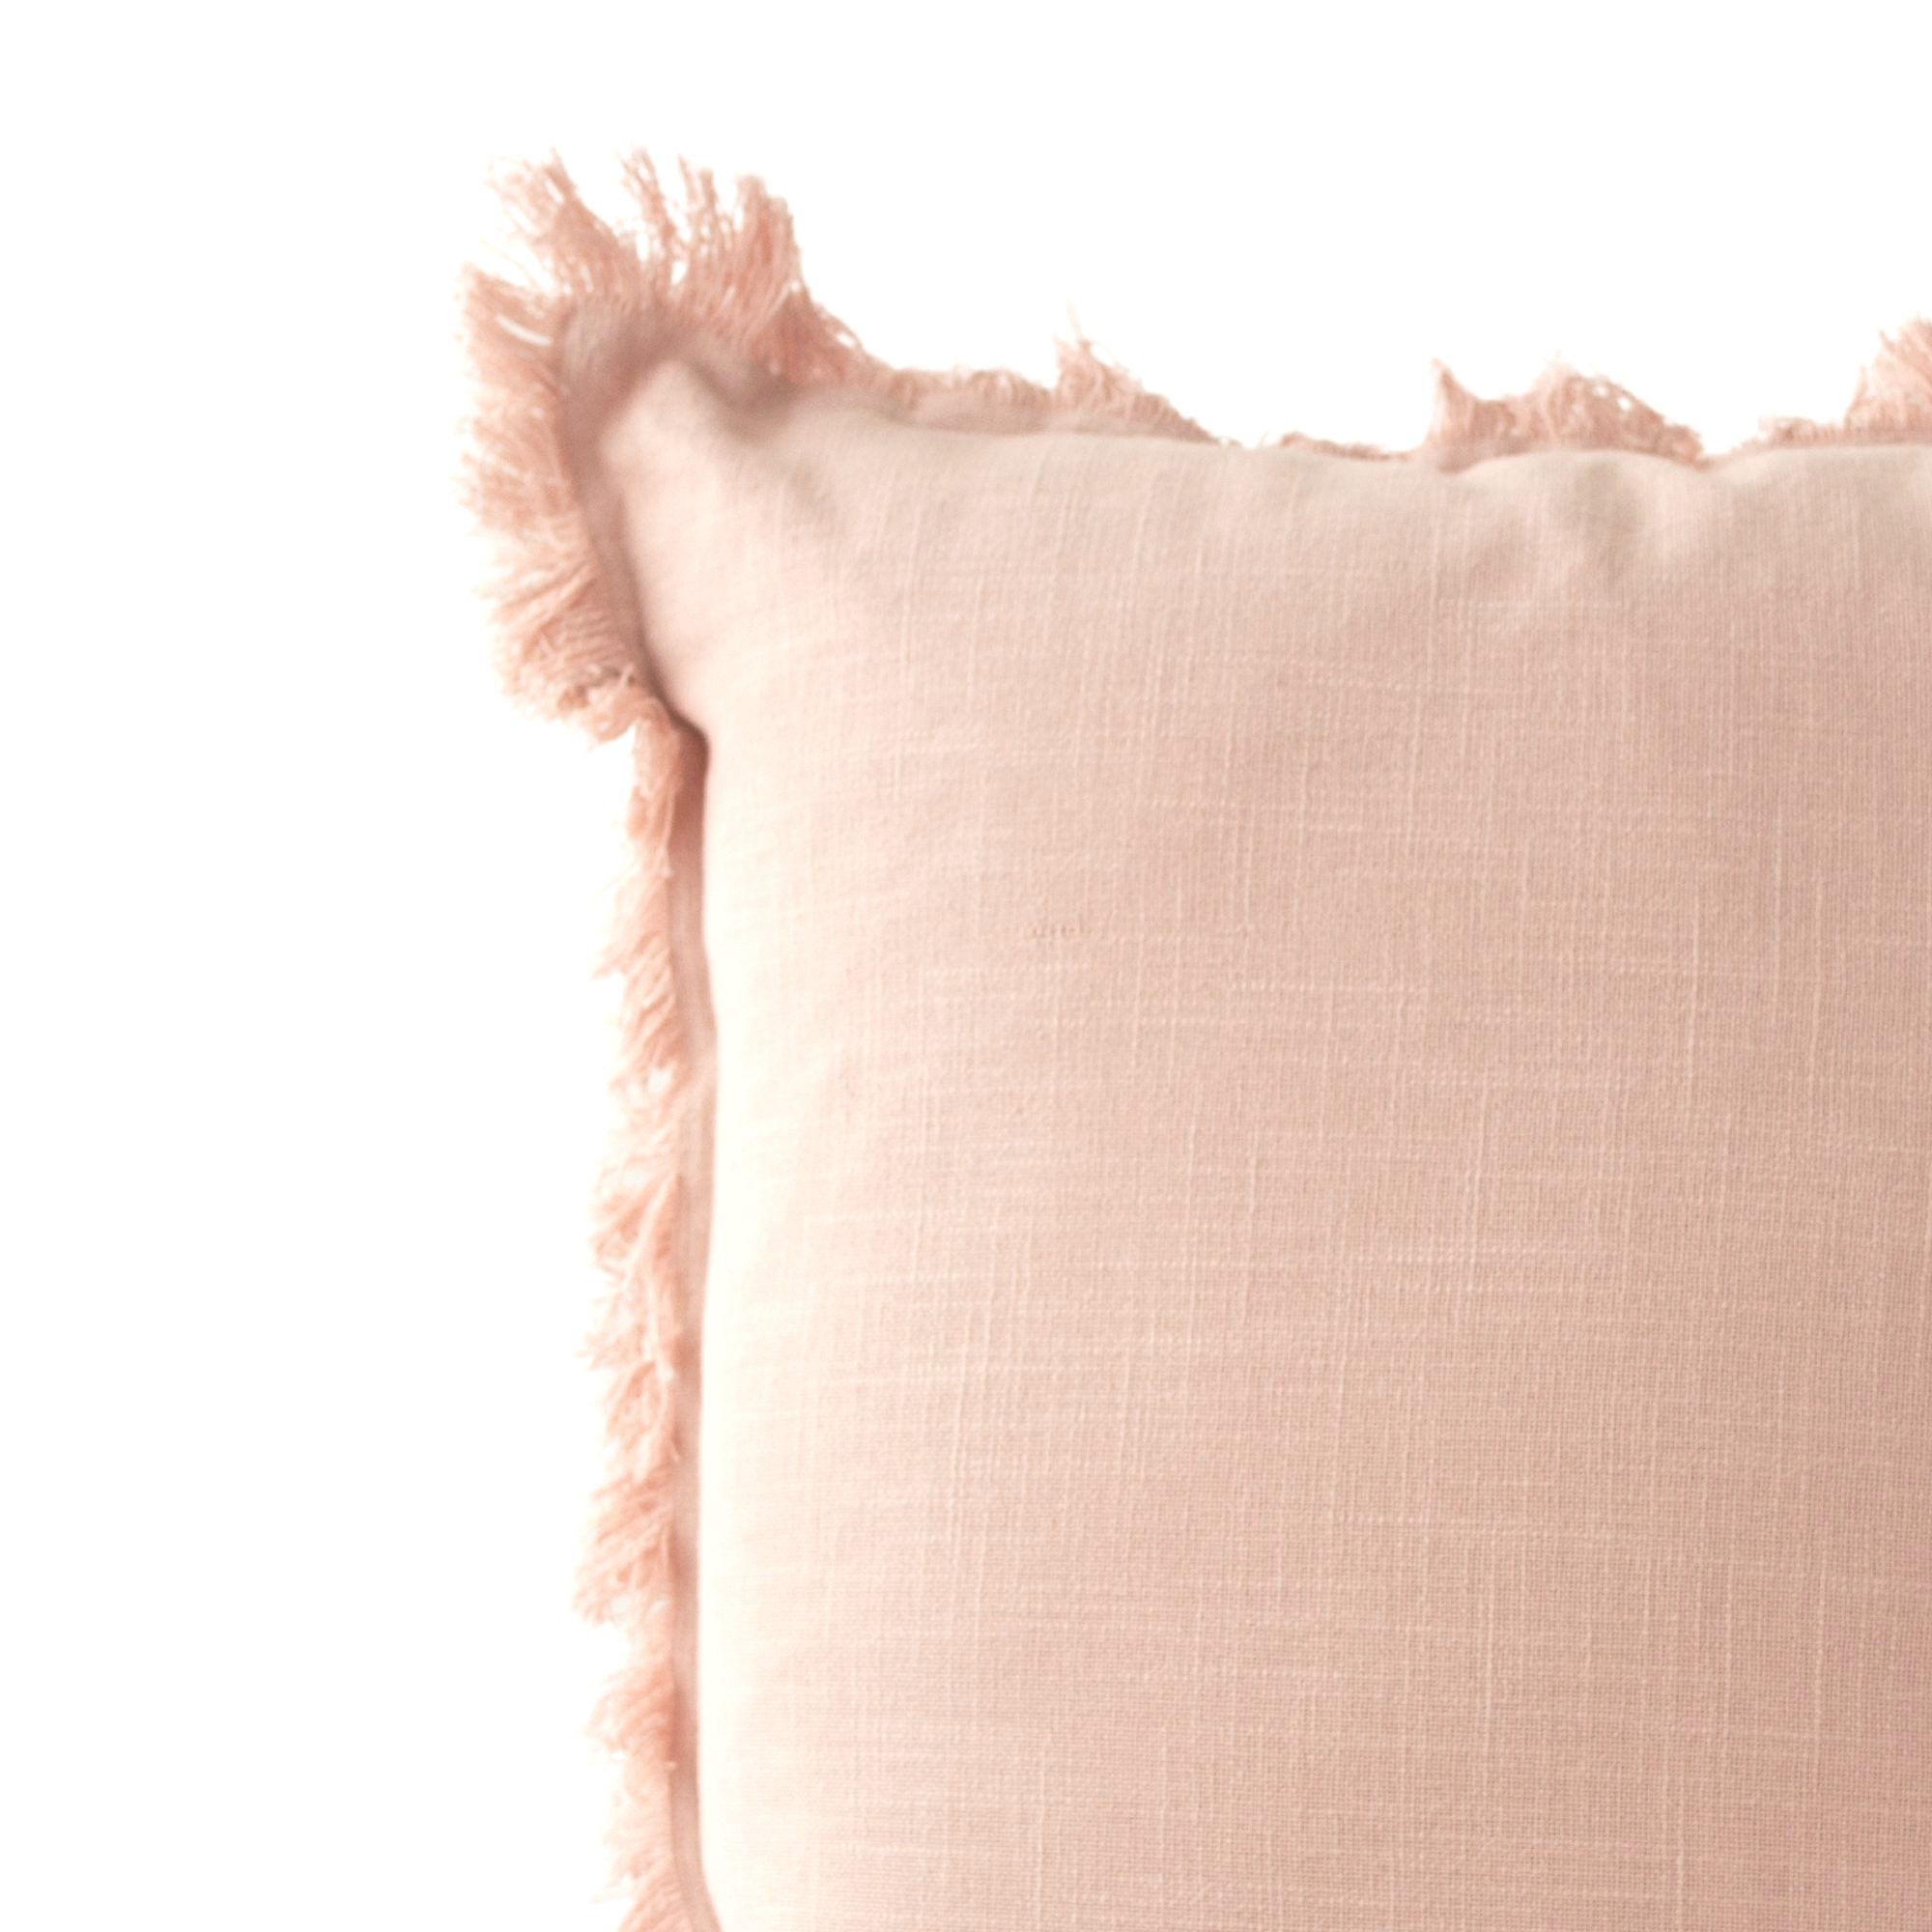 Sevilla 22″ Blush Pink Linen Pillow Cover